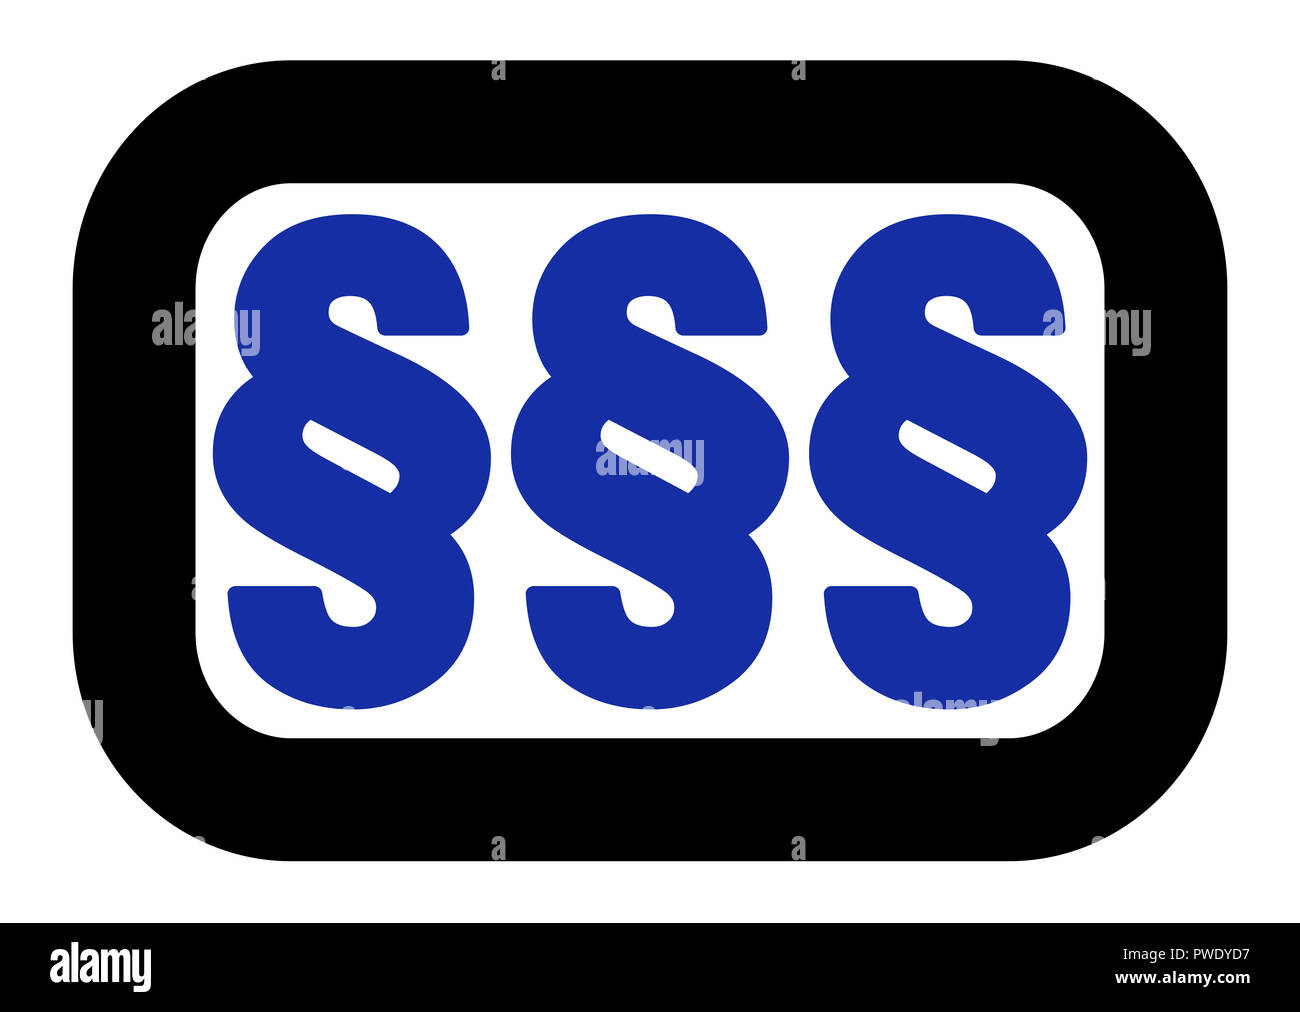 Il paragrafo segno logo, tre simboli blu, nero arrotondato telaio. Illustrazione semplice su sfondo bianco. Foto Stock